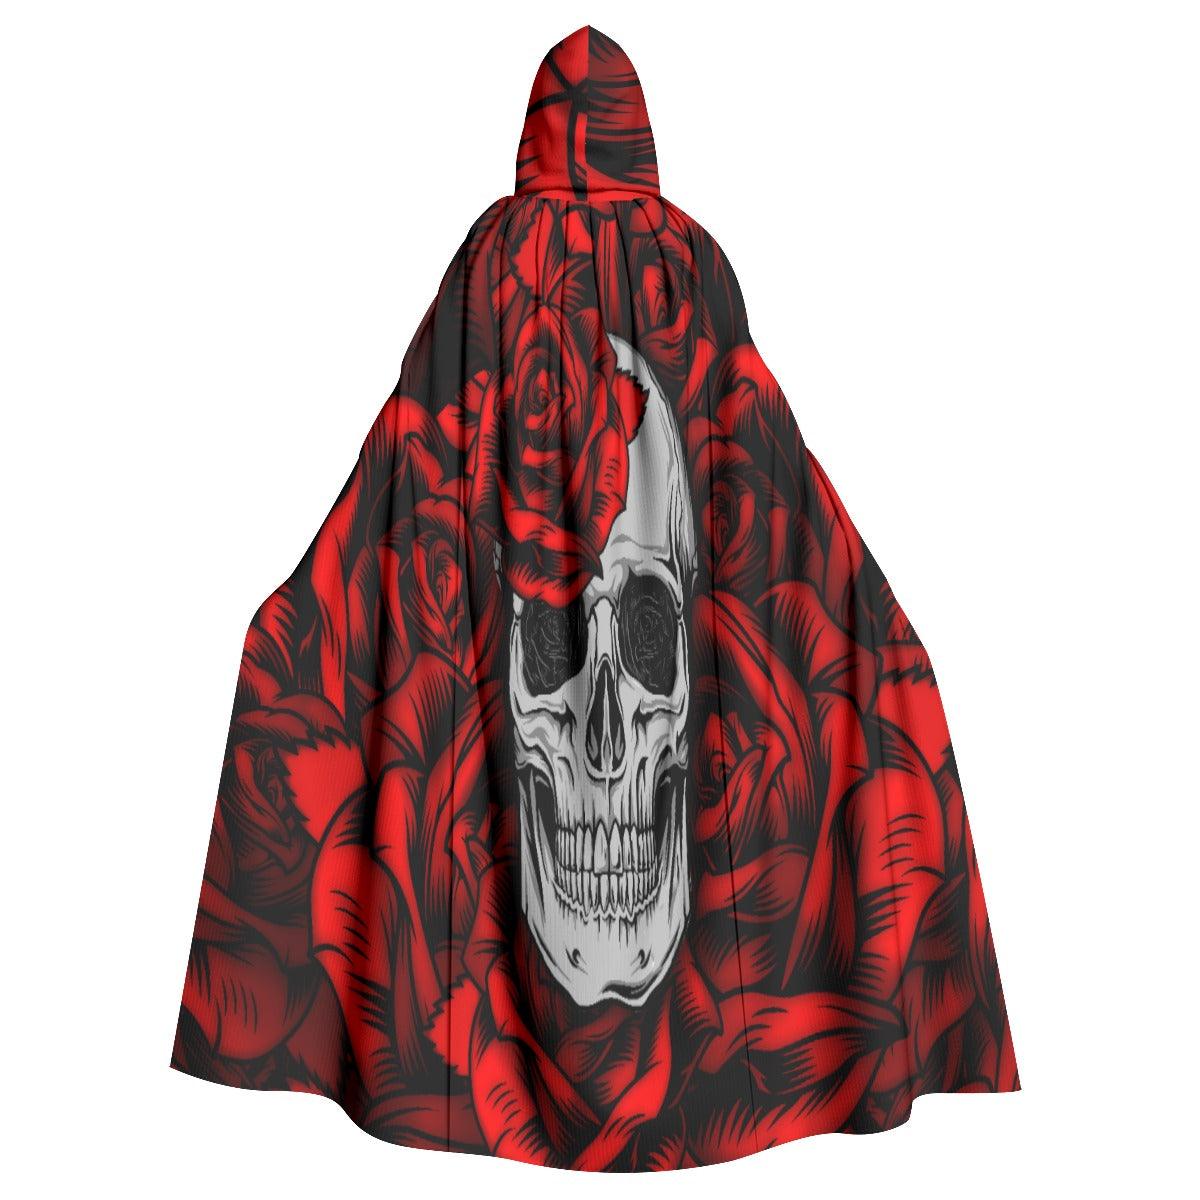 Skull And Roses Hooded Cloak - Wonder Skull